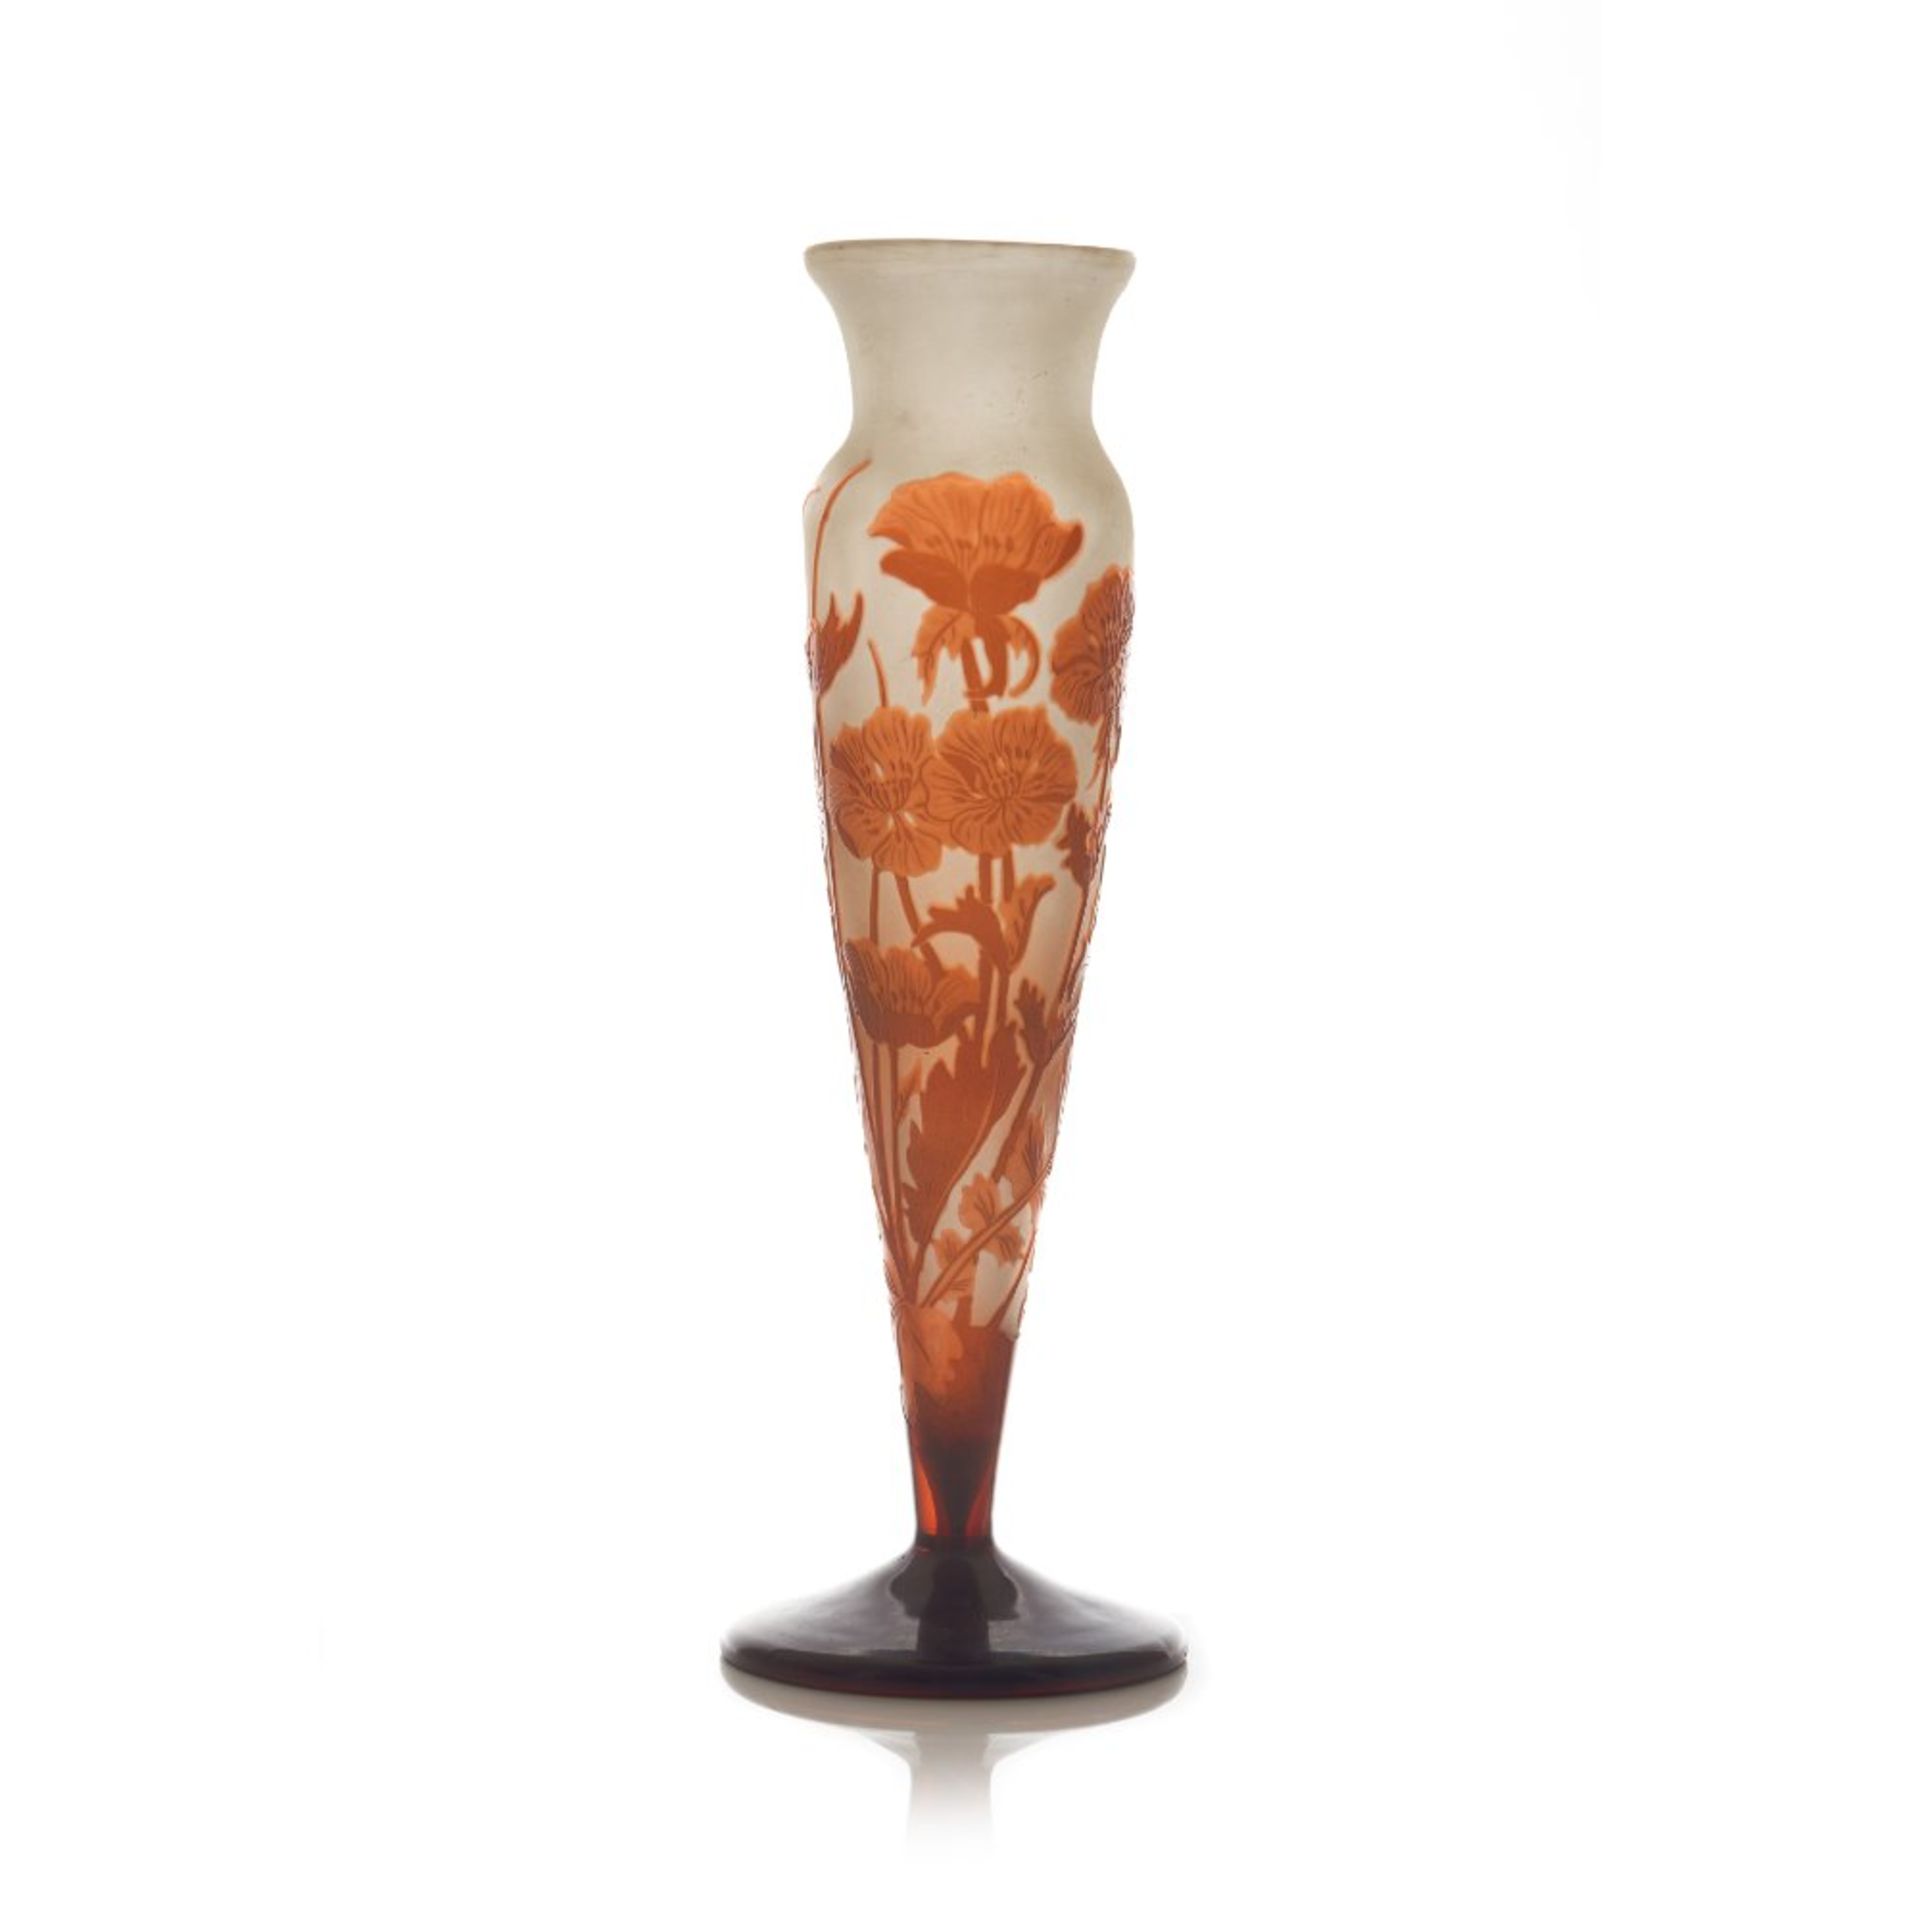 Emile Gallé (1846-1904)An Art Nouveau Vase